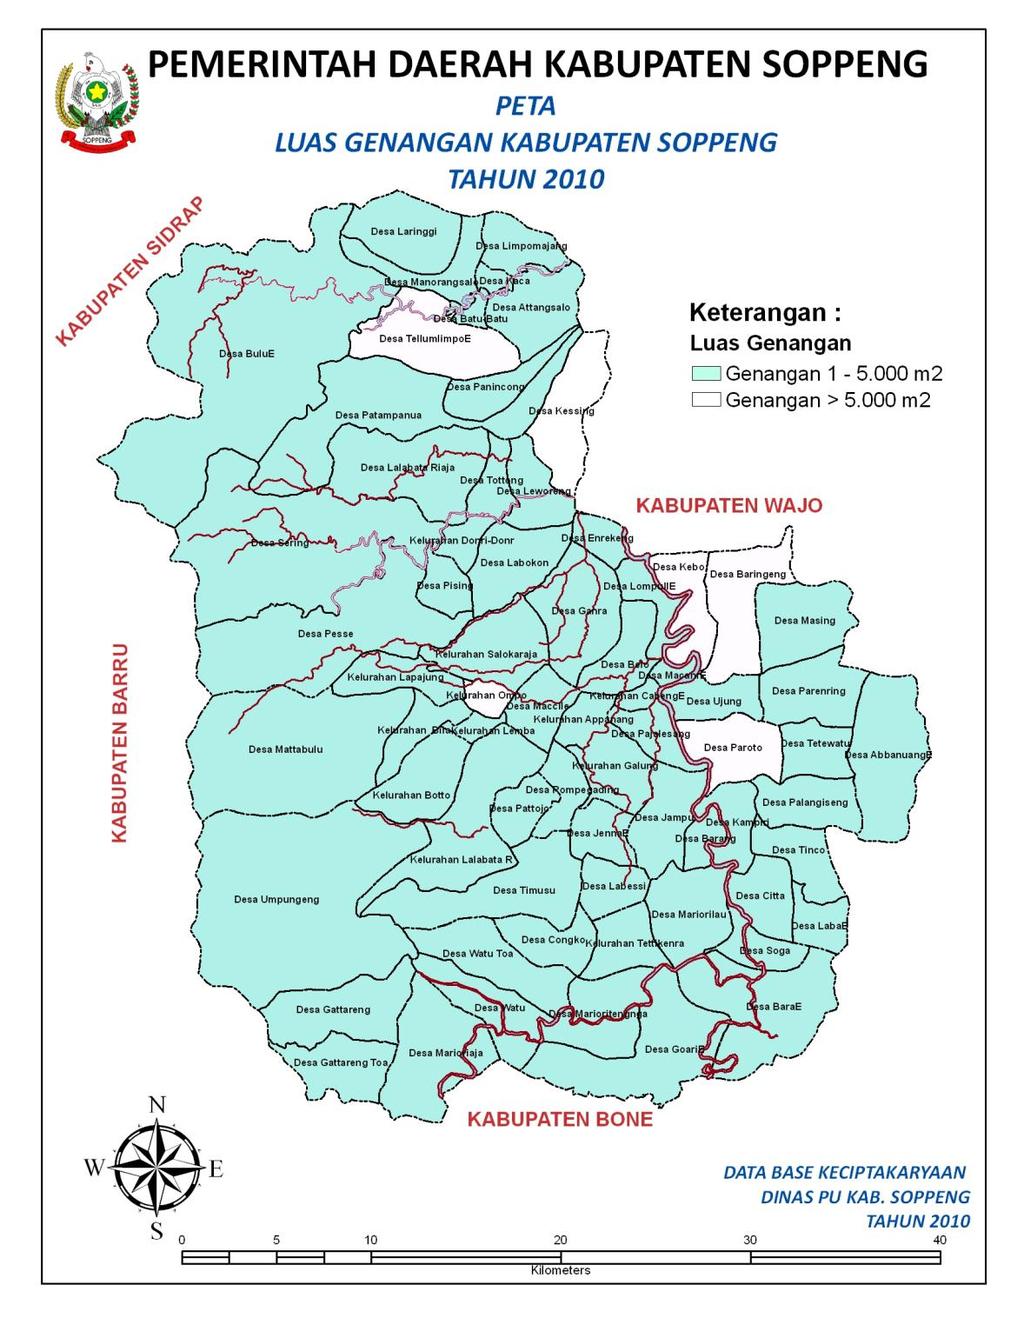 Kondisi dilapangan secara umum menunjukkan, bahwa sistem pengaliran drainase lingkungan di kabupaten Soppeng banyak dipengaruhi oleh daya tampung sungai atau saluran drainase yang tidak mampu